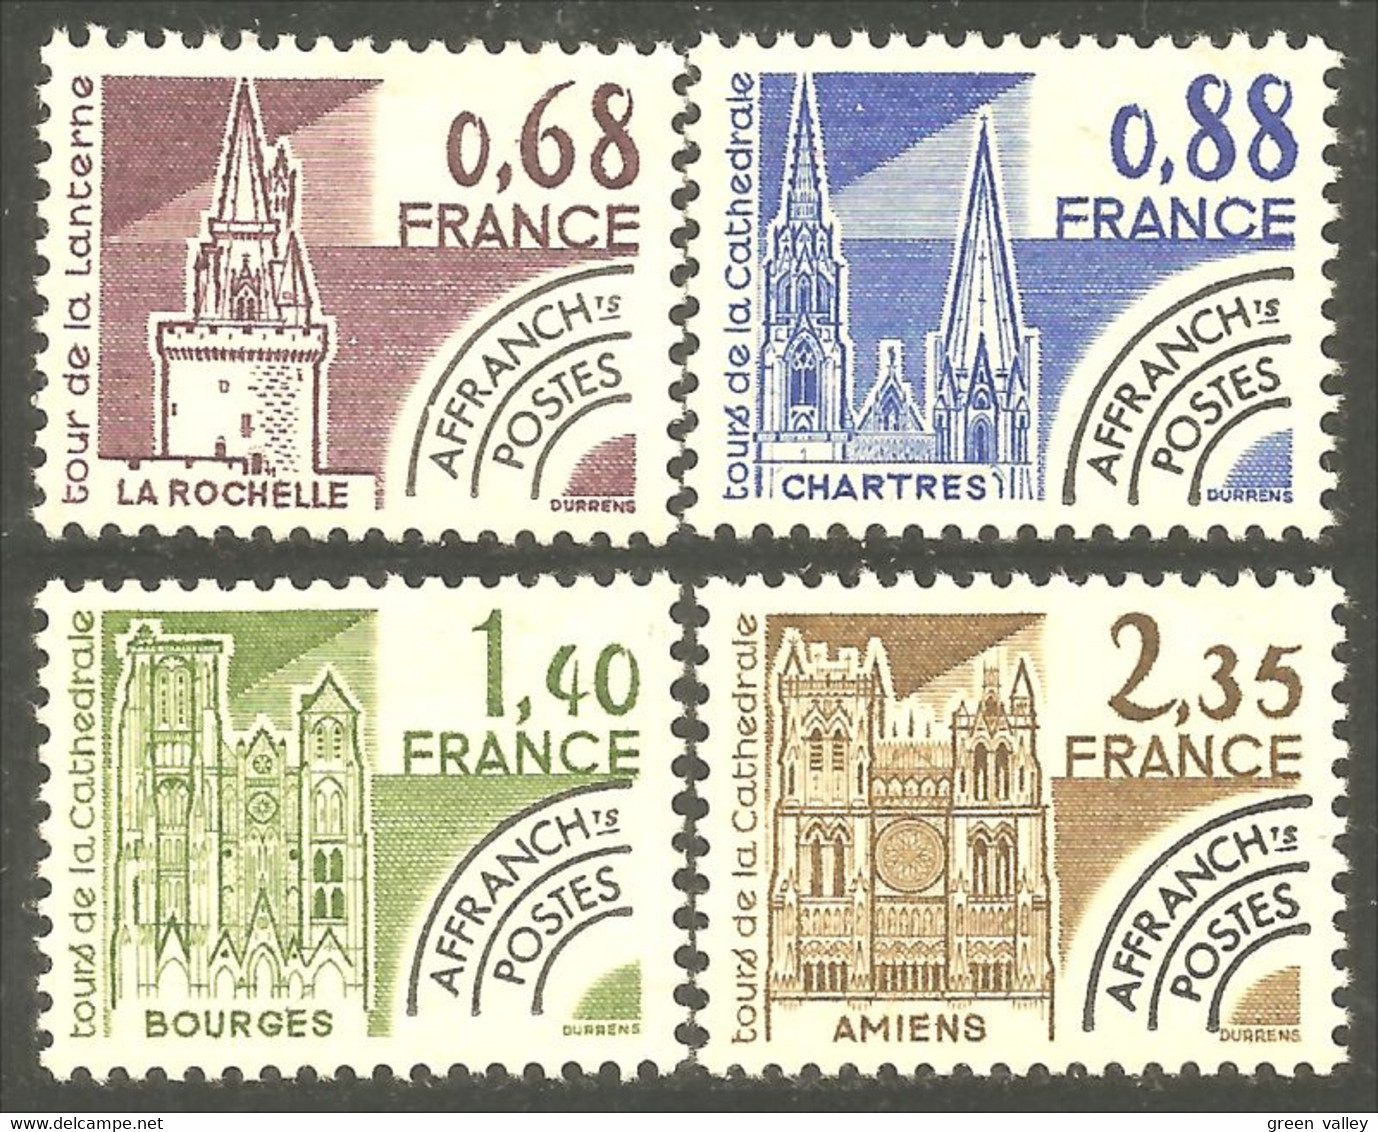 354 France Yv 162-165 Cathédrales Cathedrals Préoblitéré Precancel MNH ** Neuf SC (113a) - 1964-1988